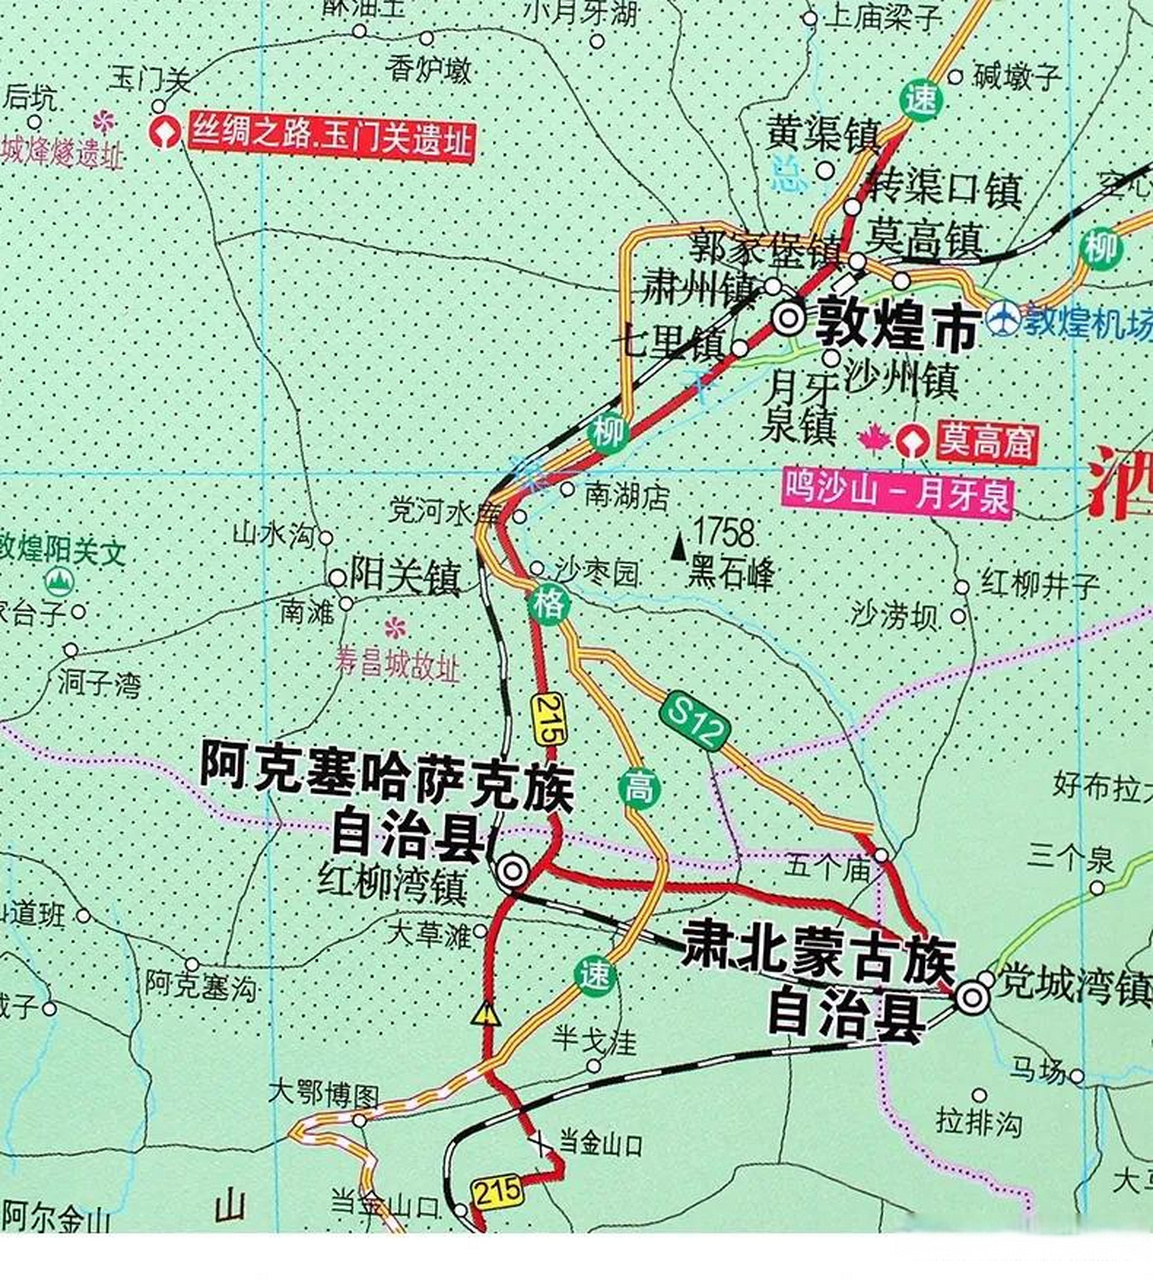 从甘肃敦煌到青海省的铁路叫敦格铁路(敦煌至格尔木),这条铁路经过